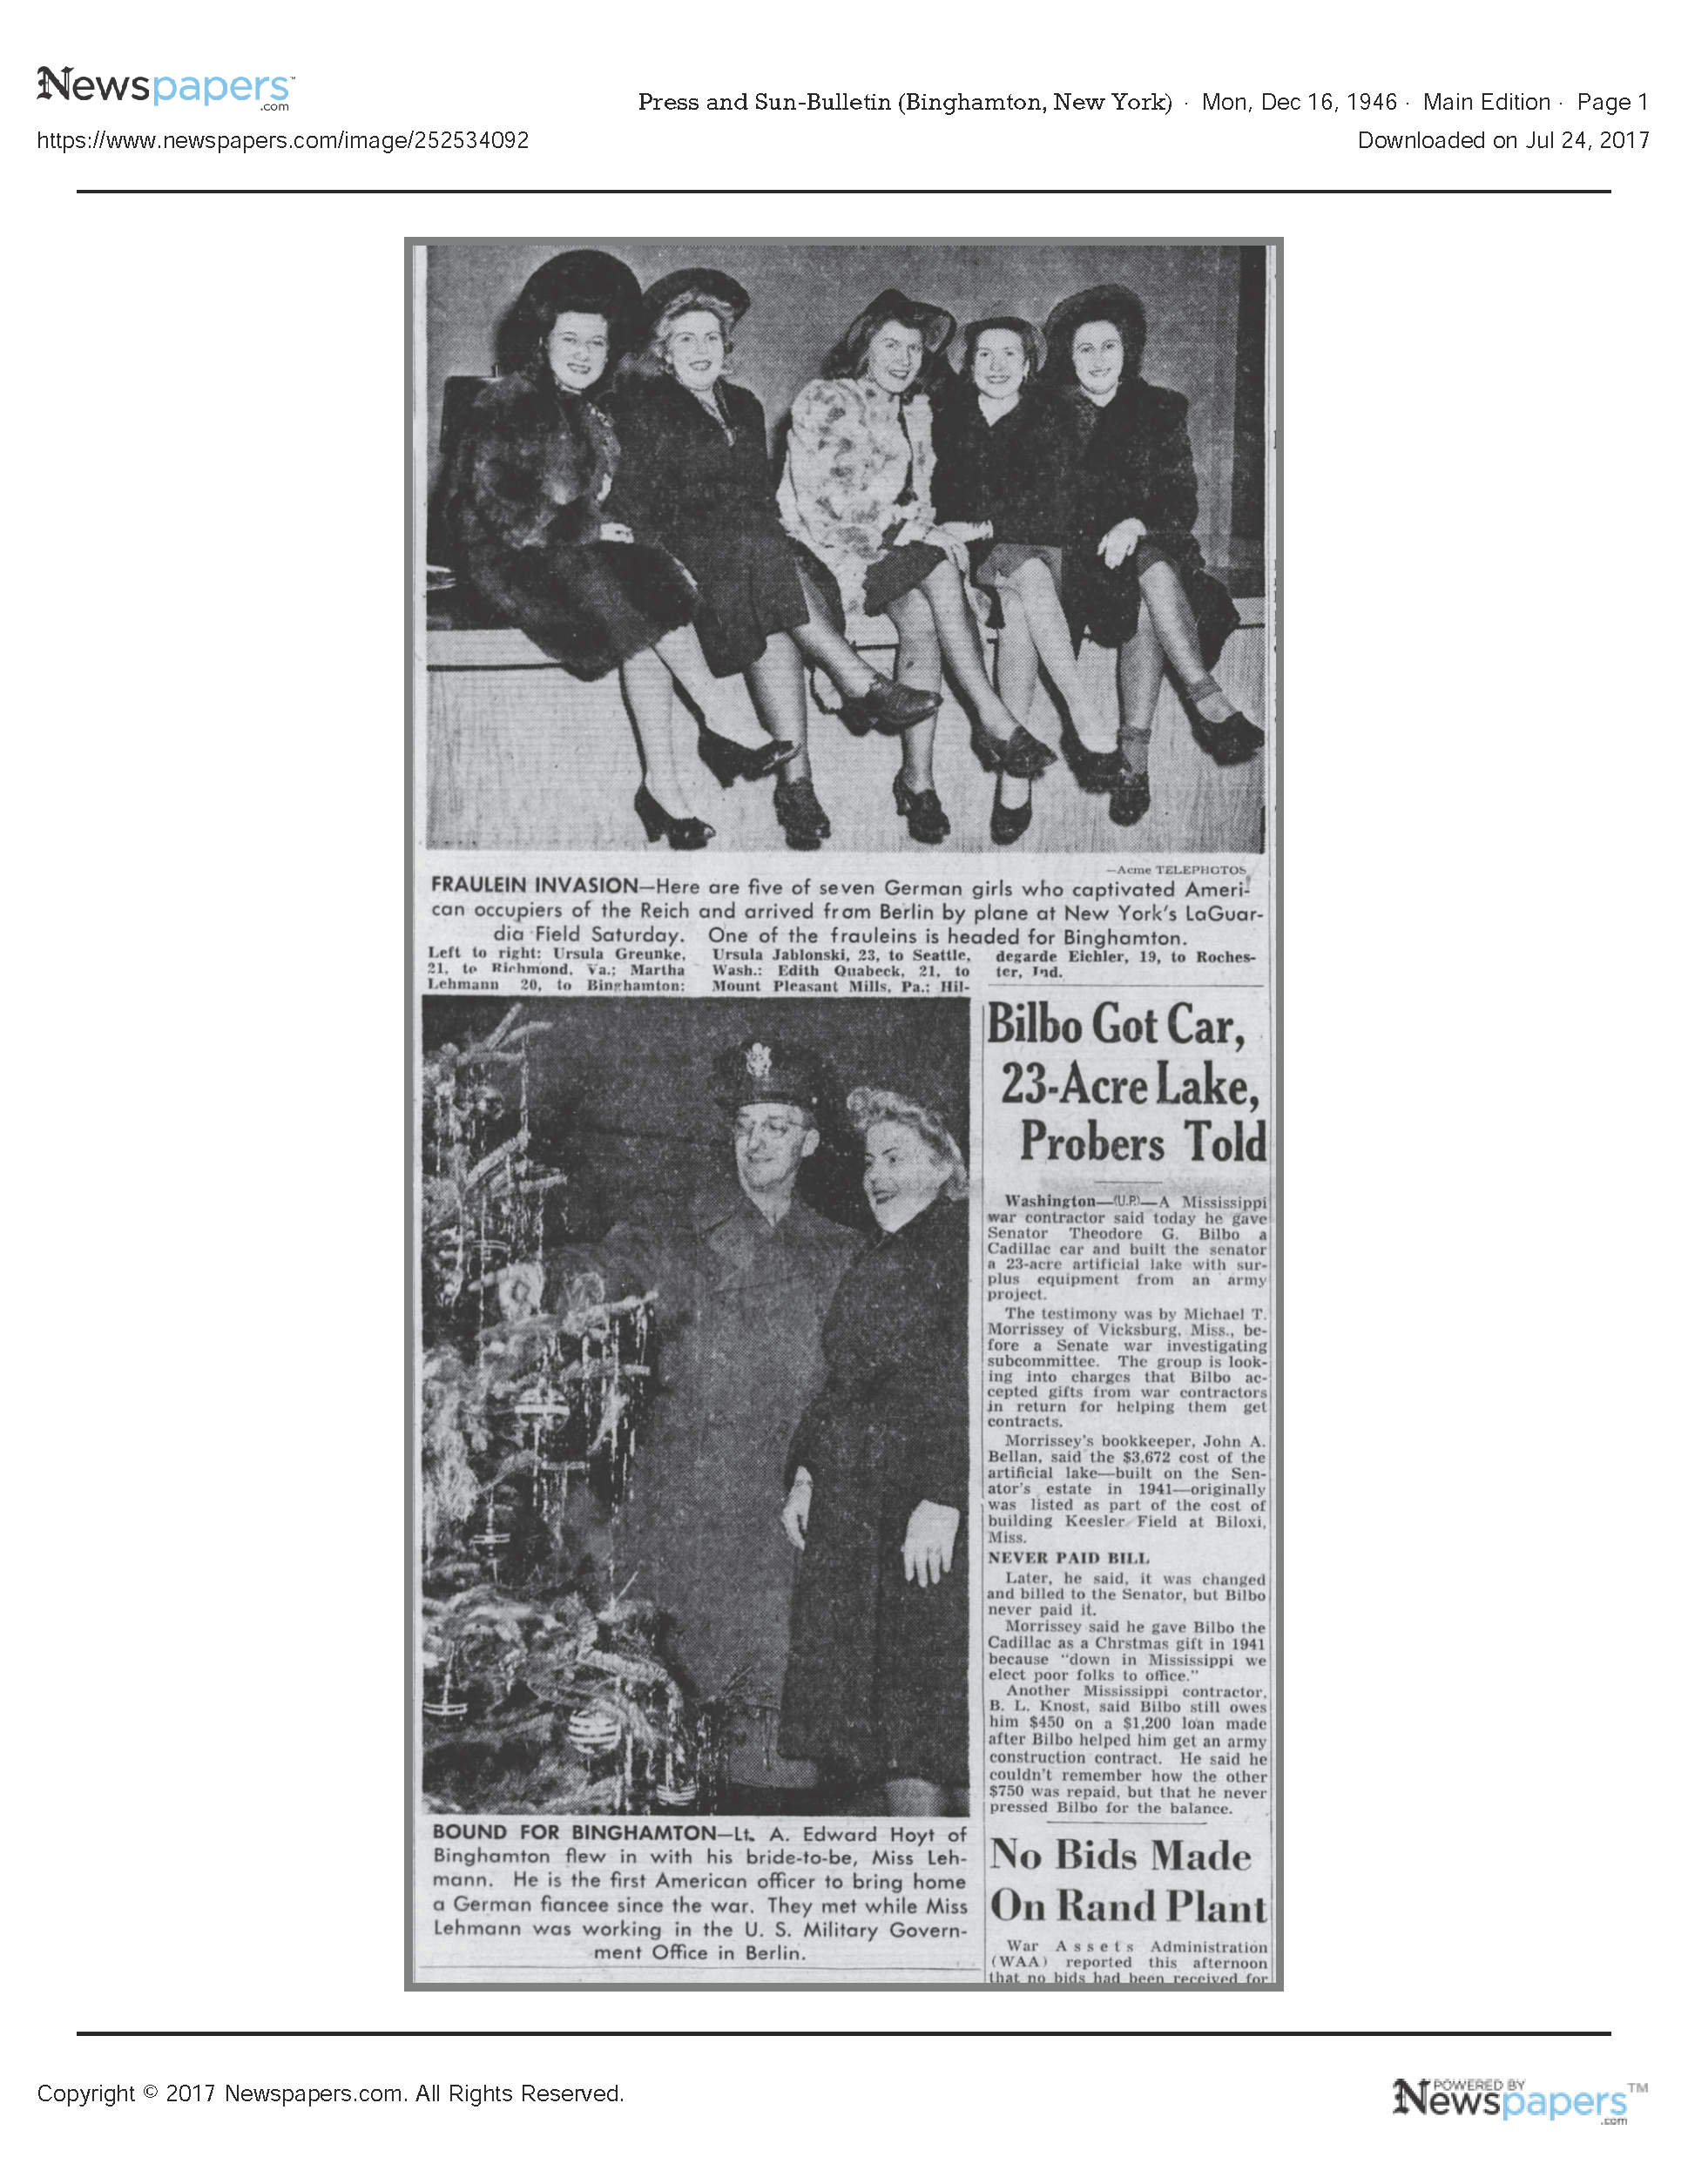 Article, 'Fraulein Invasion, December, 1946